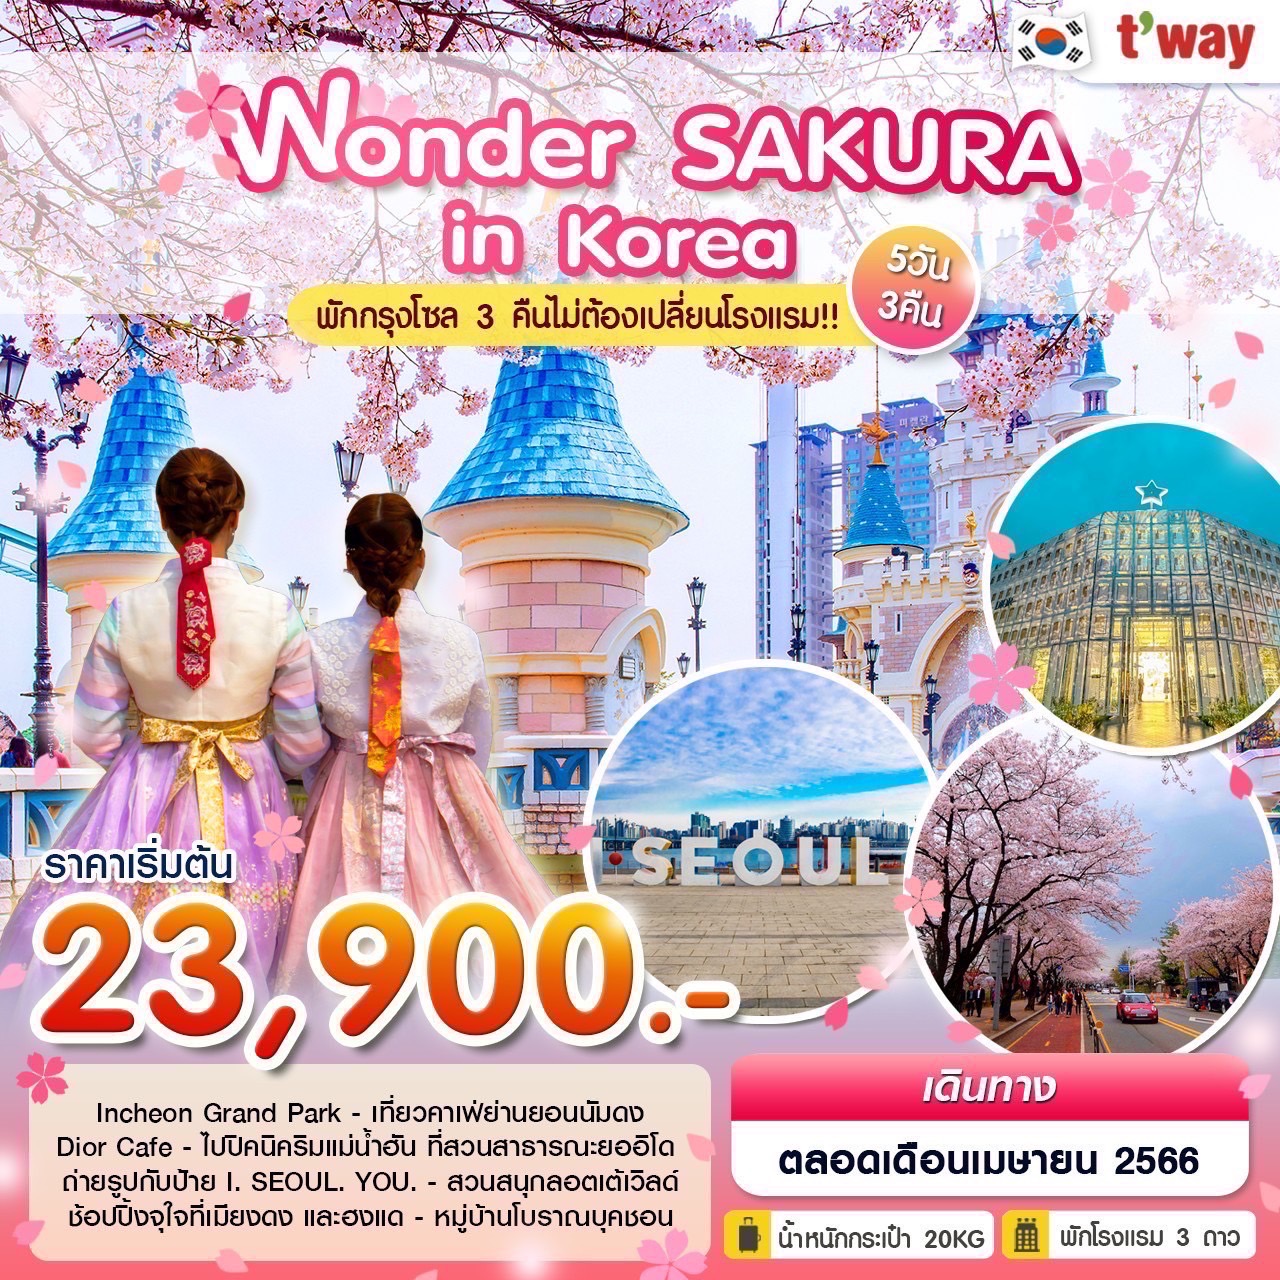 ทัวร์เกาหลีใต้ Wonder Sakura in Korea 5 วัน 3 คืน  (TW) มี.ค.-เม.ย. 66